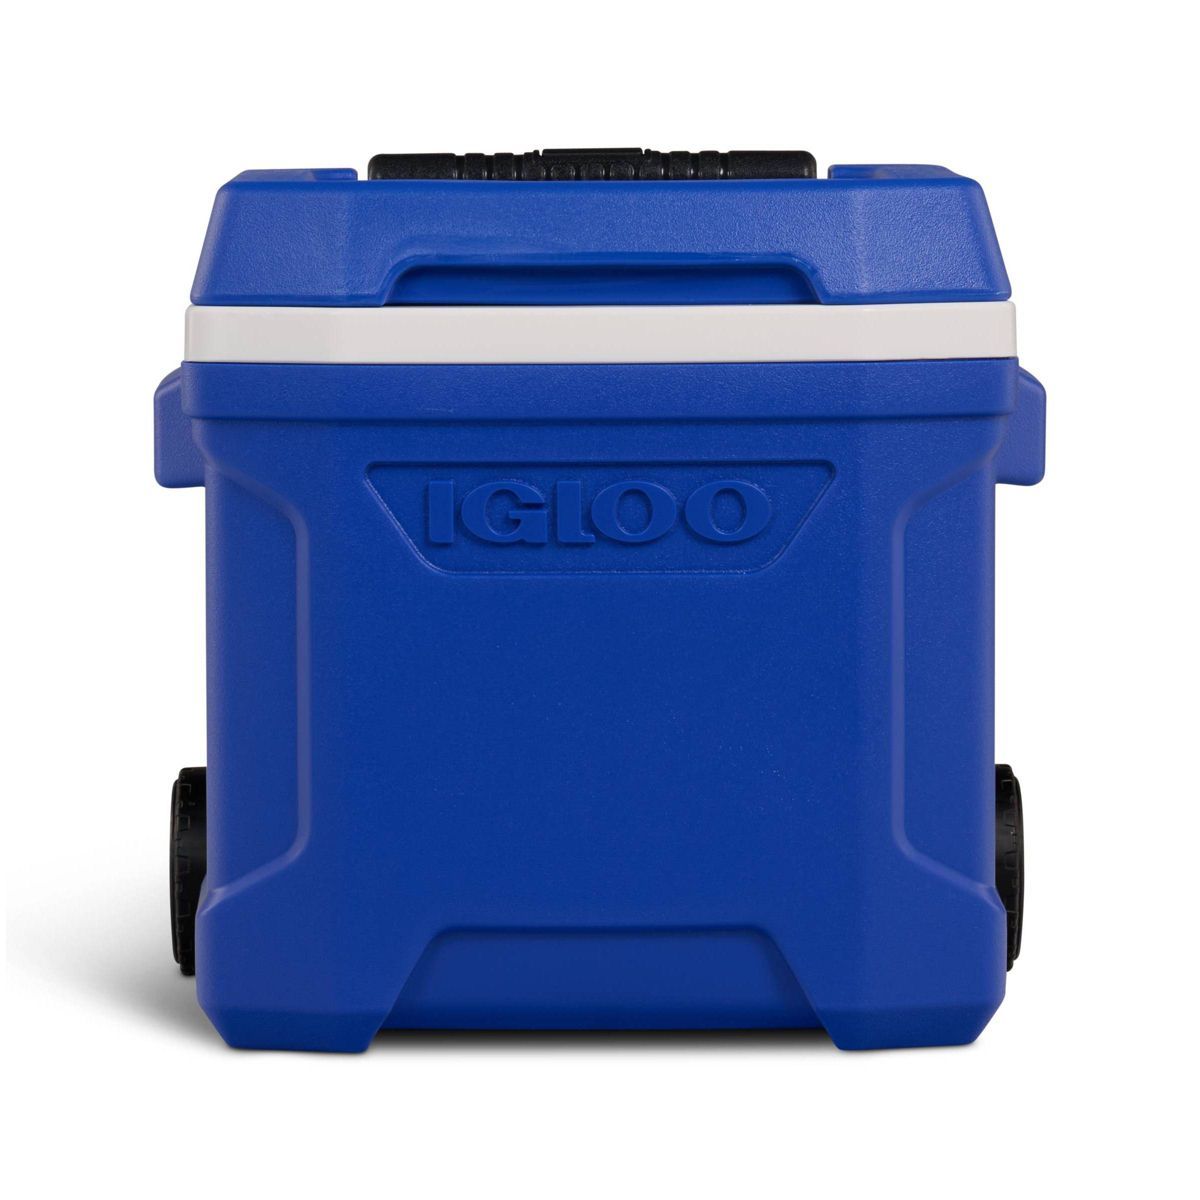 Igloo Profile 16 Roller Hard-Sided Cooler - Blue | Target